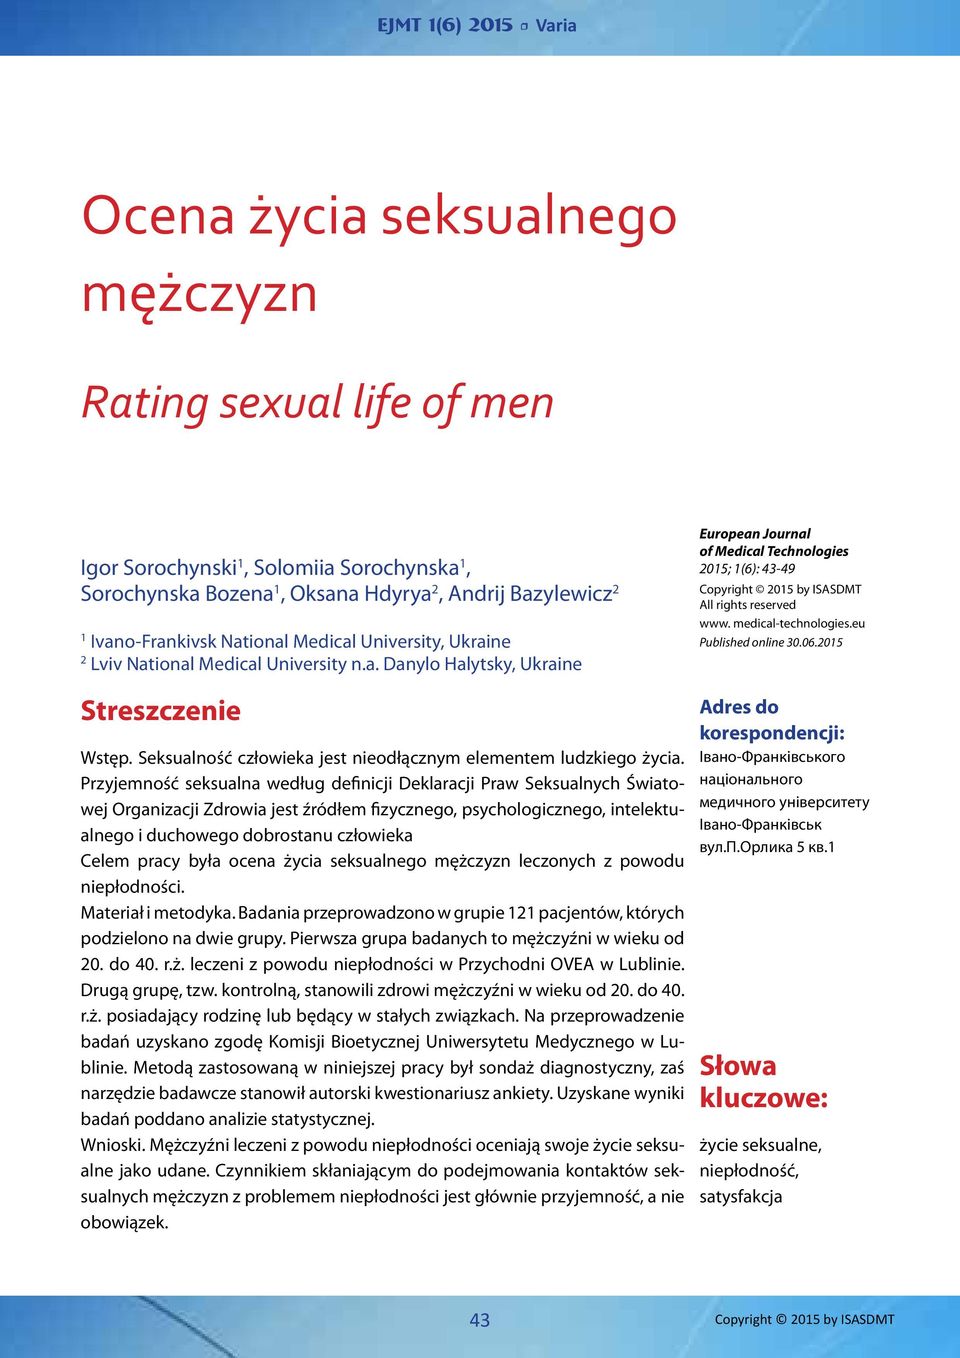 Przyjemność seksualna według definicji Deklaracji Praw Seksualnych Światowej Organizacji Zdrowia jest źródłem fizycznego, psychologicznego, intelektualnego i duchowego dobrostanu człowieka Celem